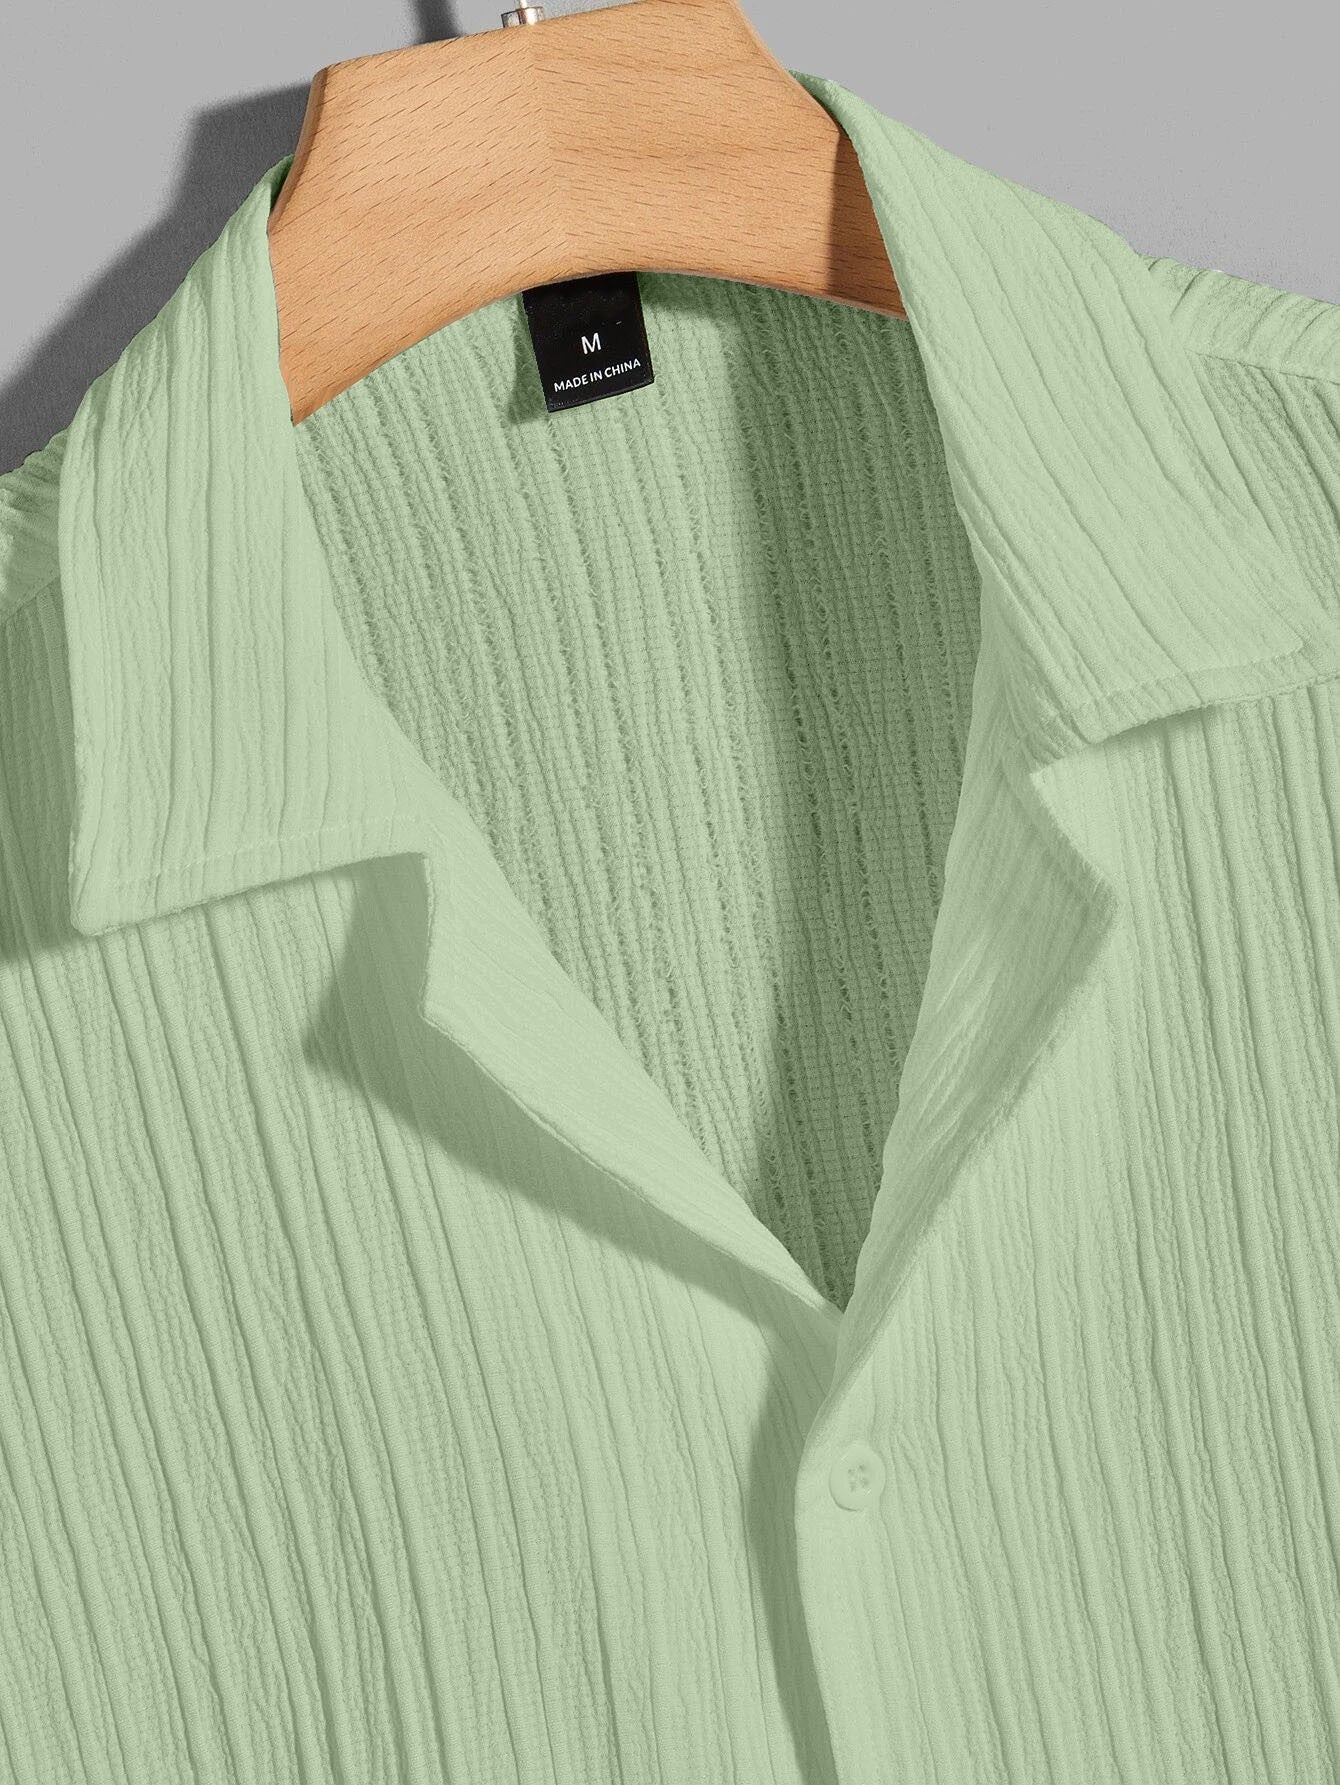 Pista Color Half Sleeves Regular Fit Formal Shirt for Men